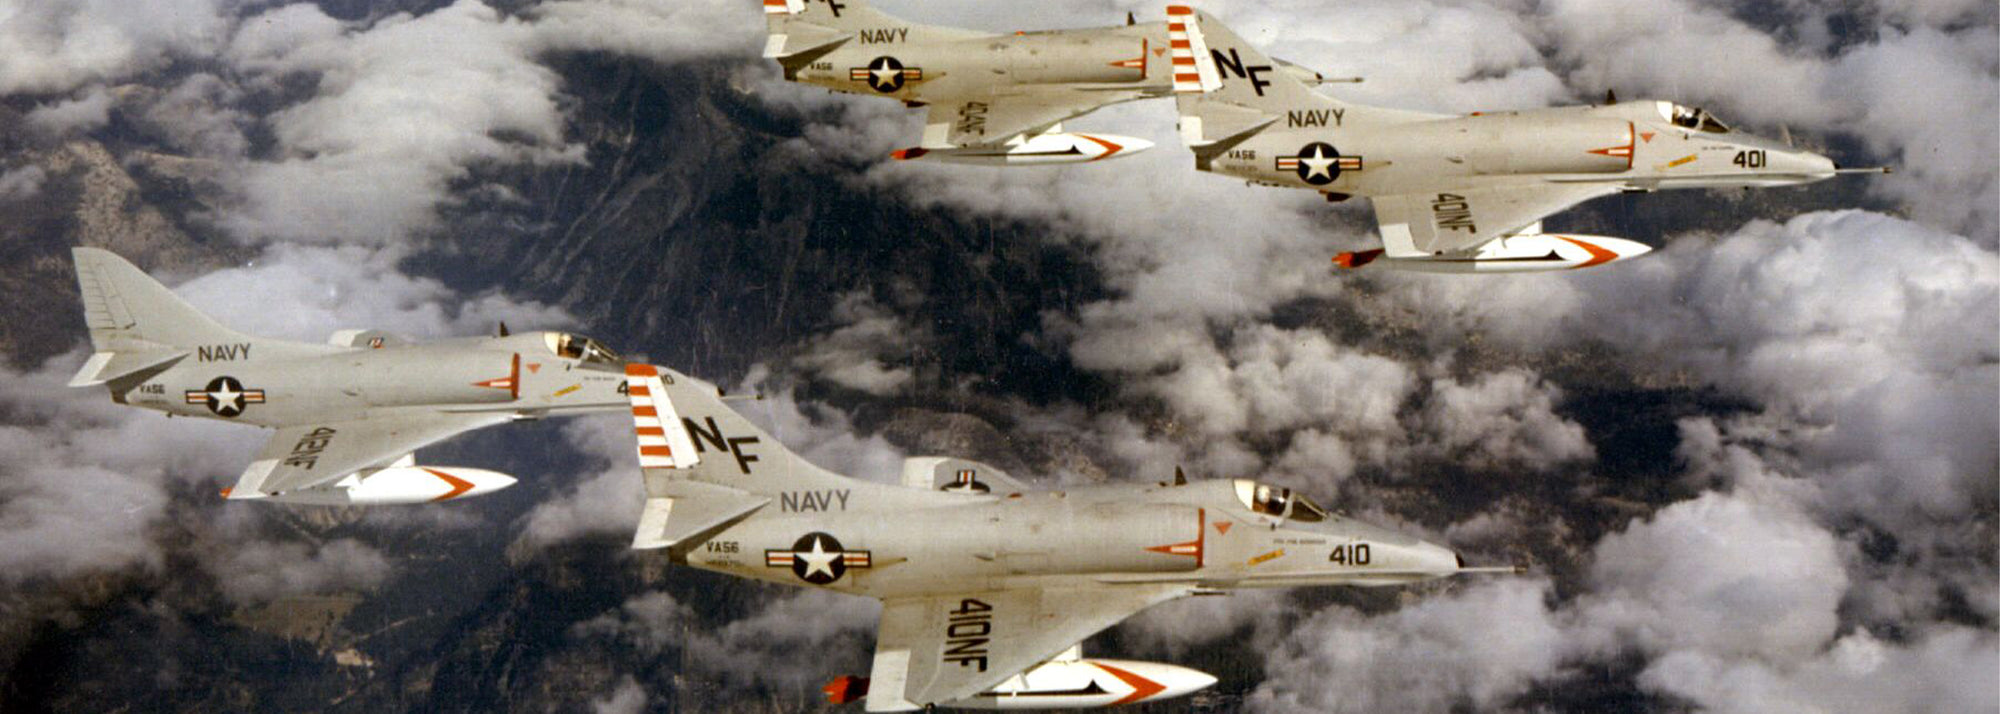 Four VA-56 A-4Es, mid-1960s